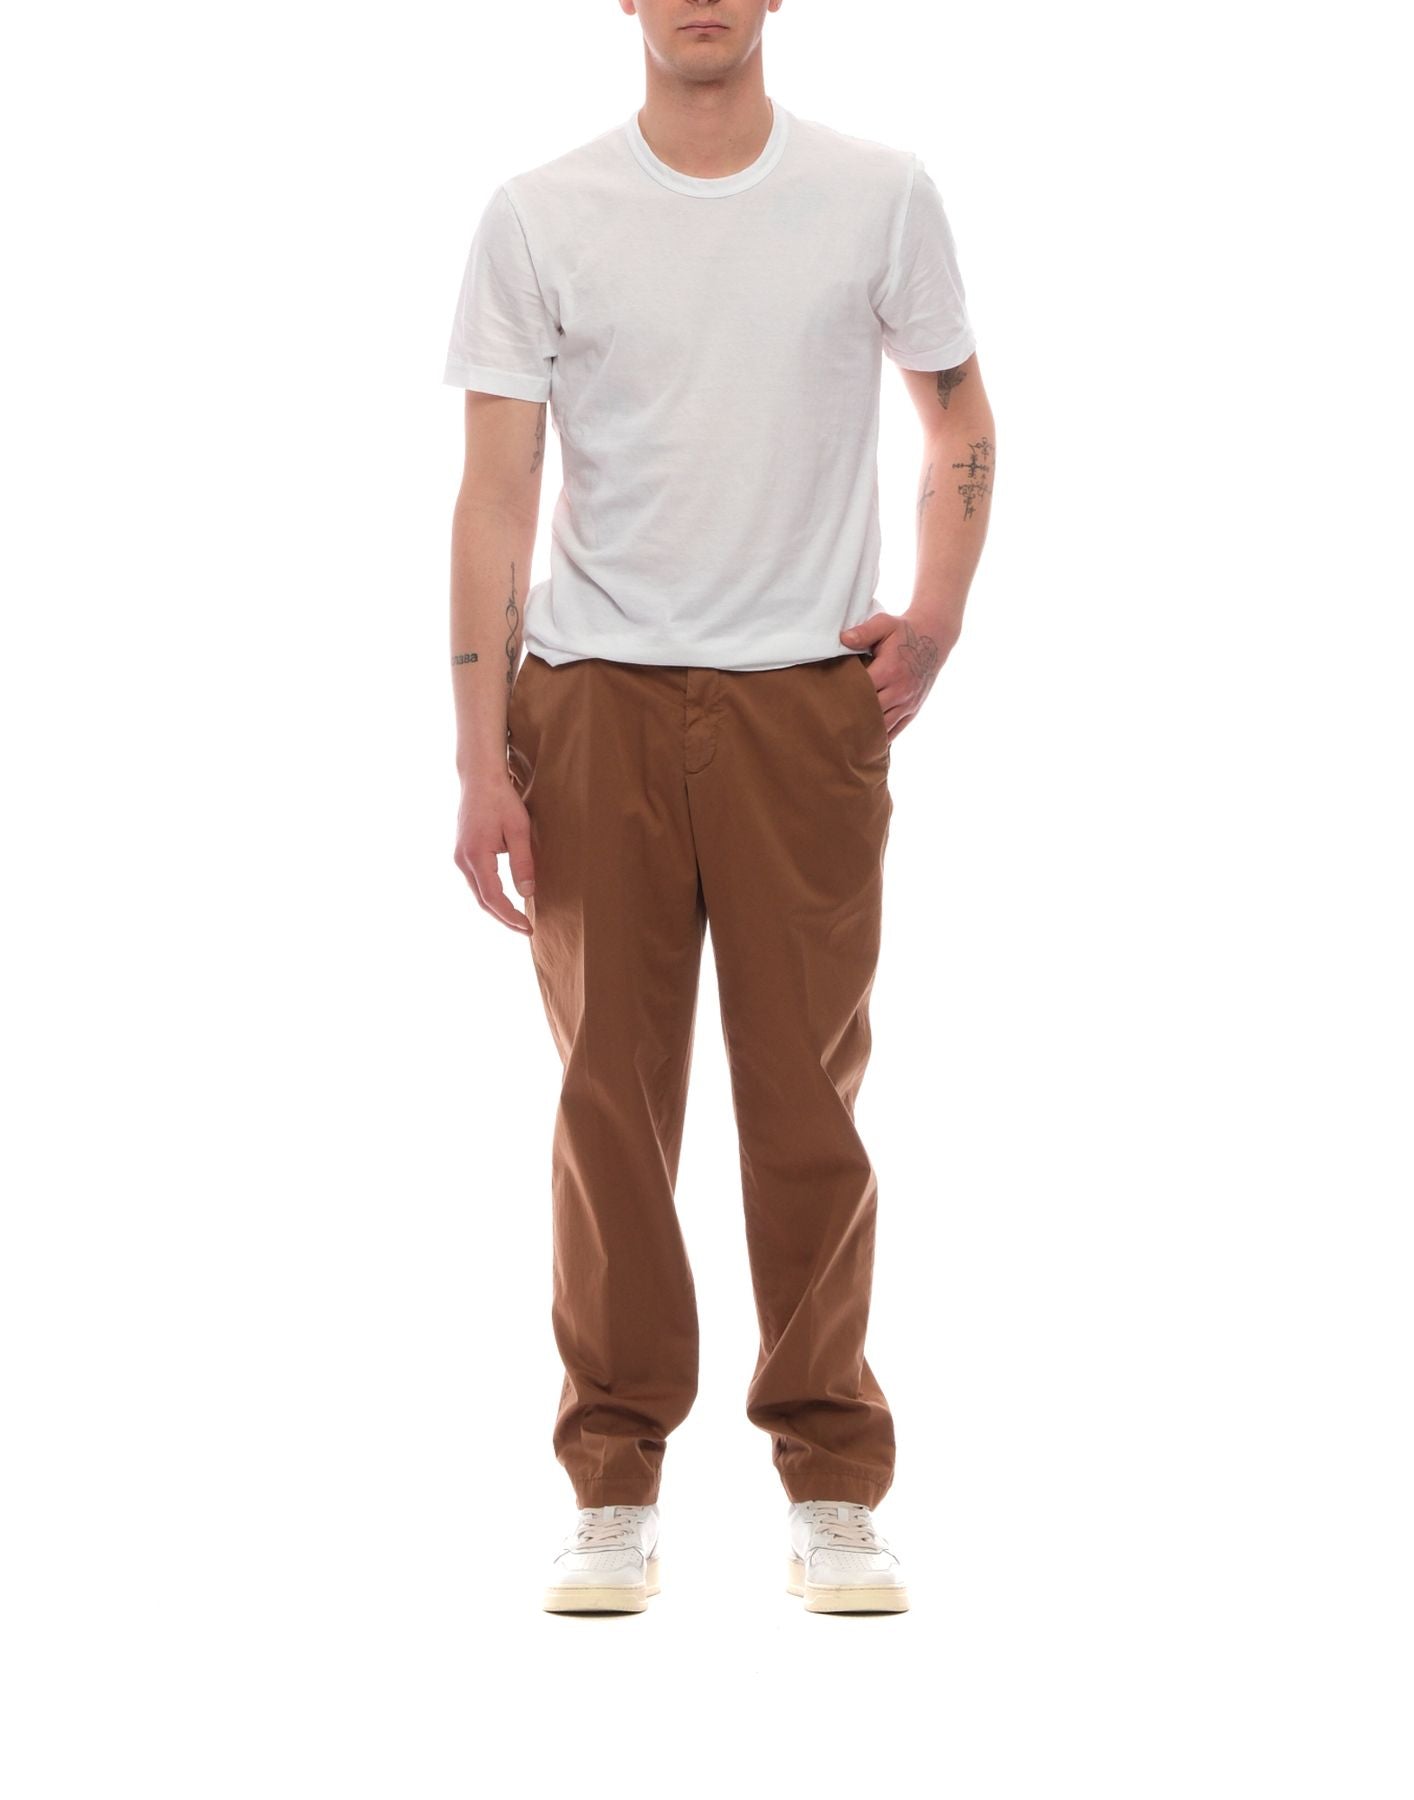 Trousers for man LA110251 CELLAR DOOR